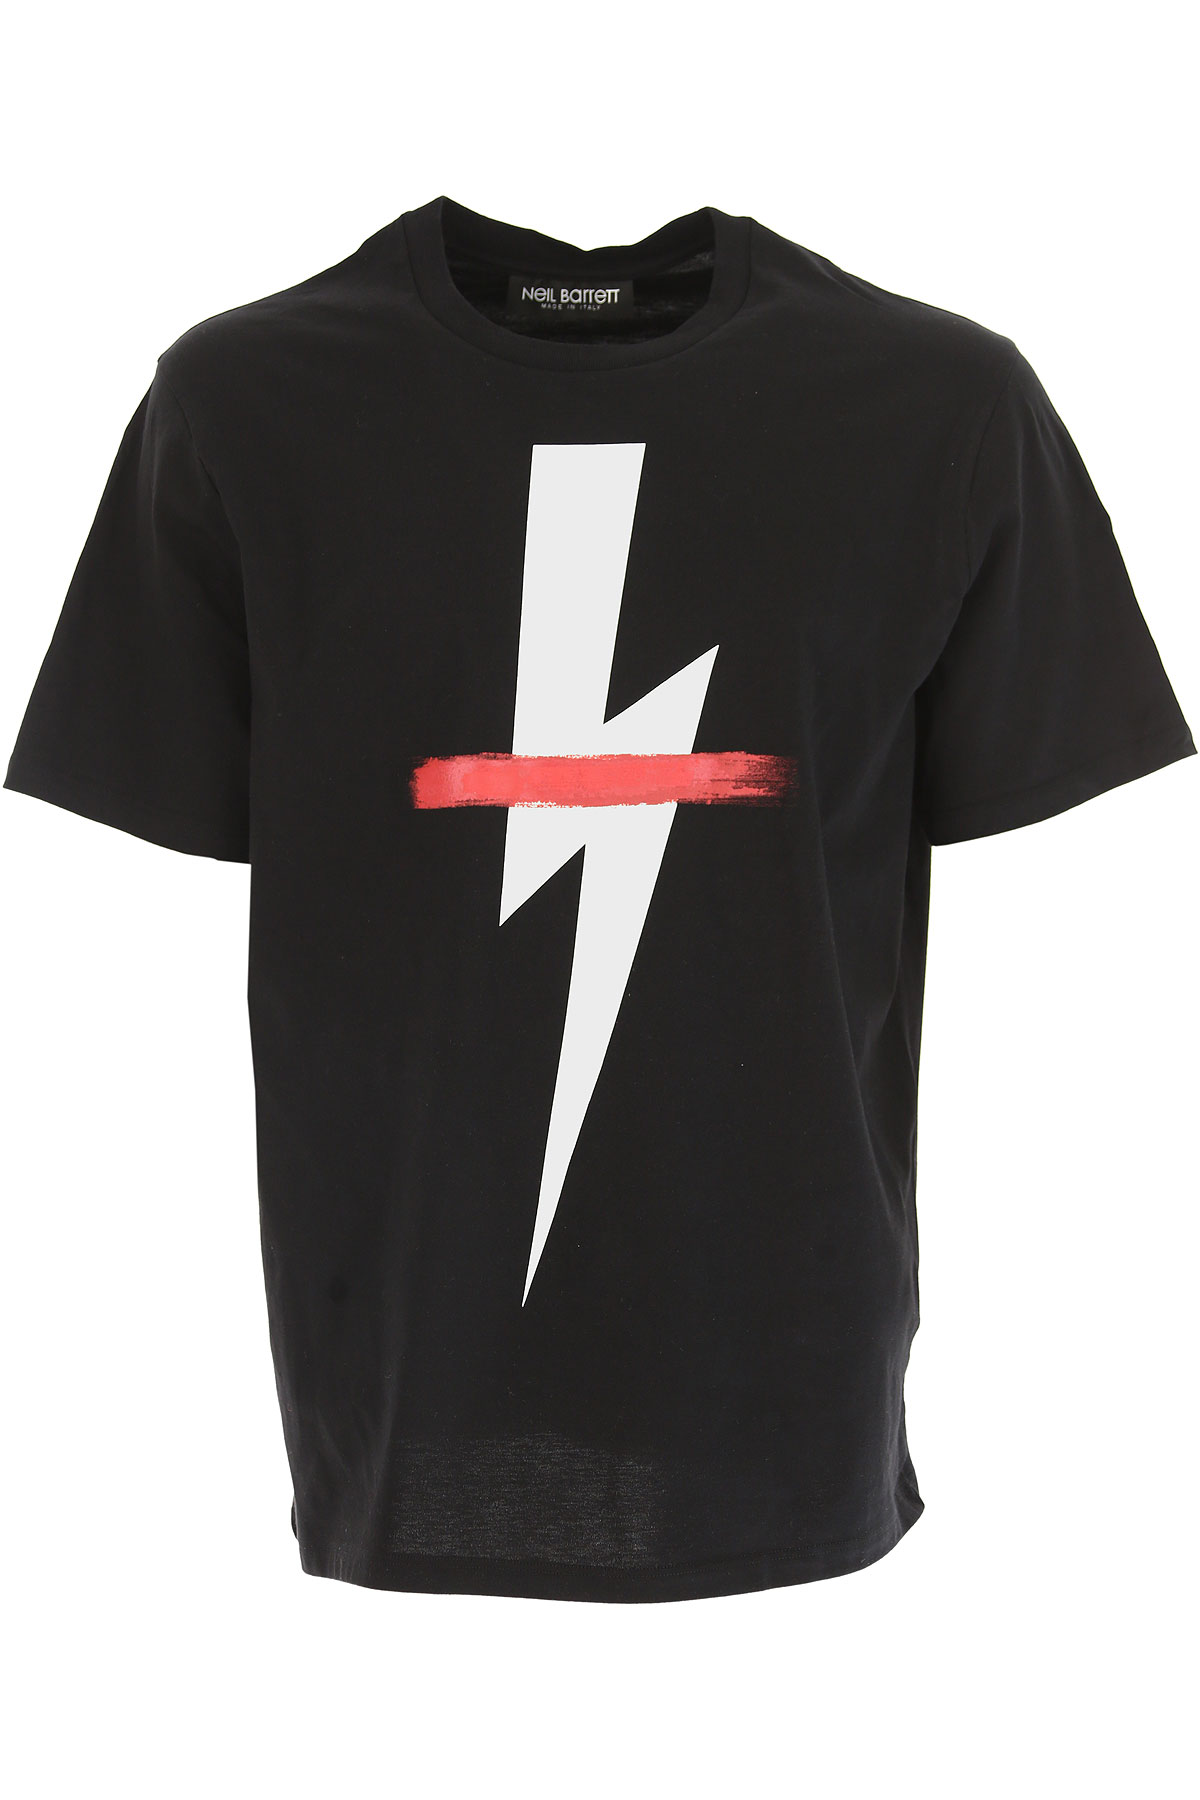 Neil Barrett T-shirt Homme, Noir, Coton, 2017, L M S XL XS